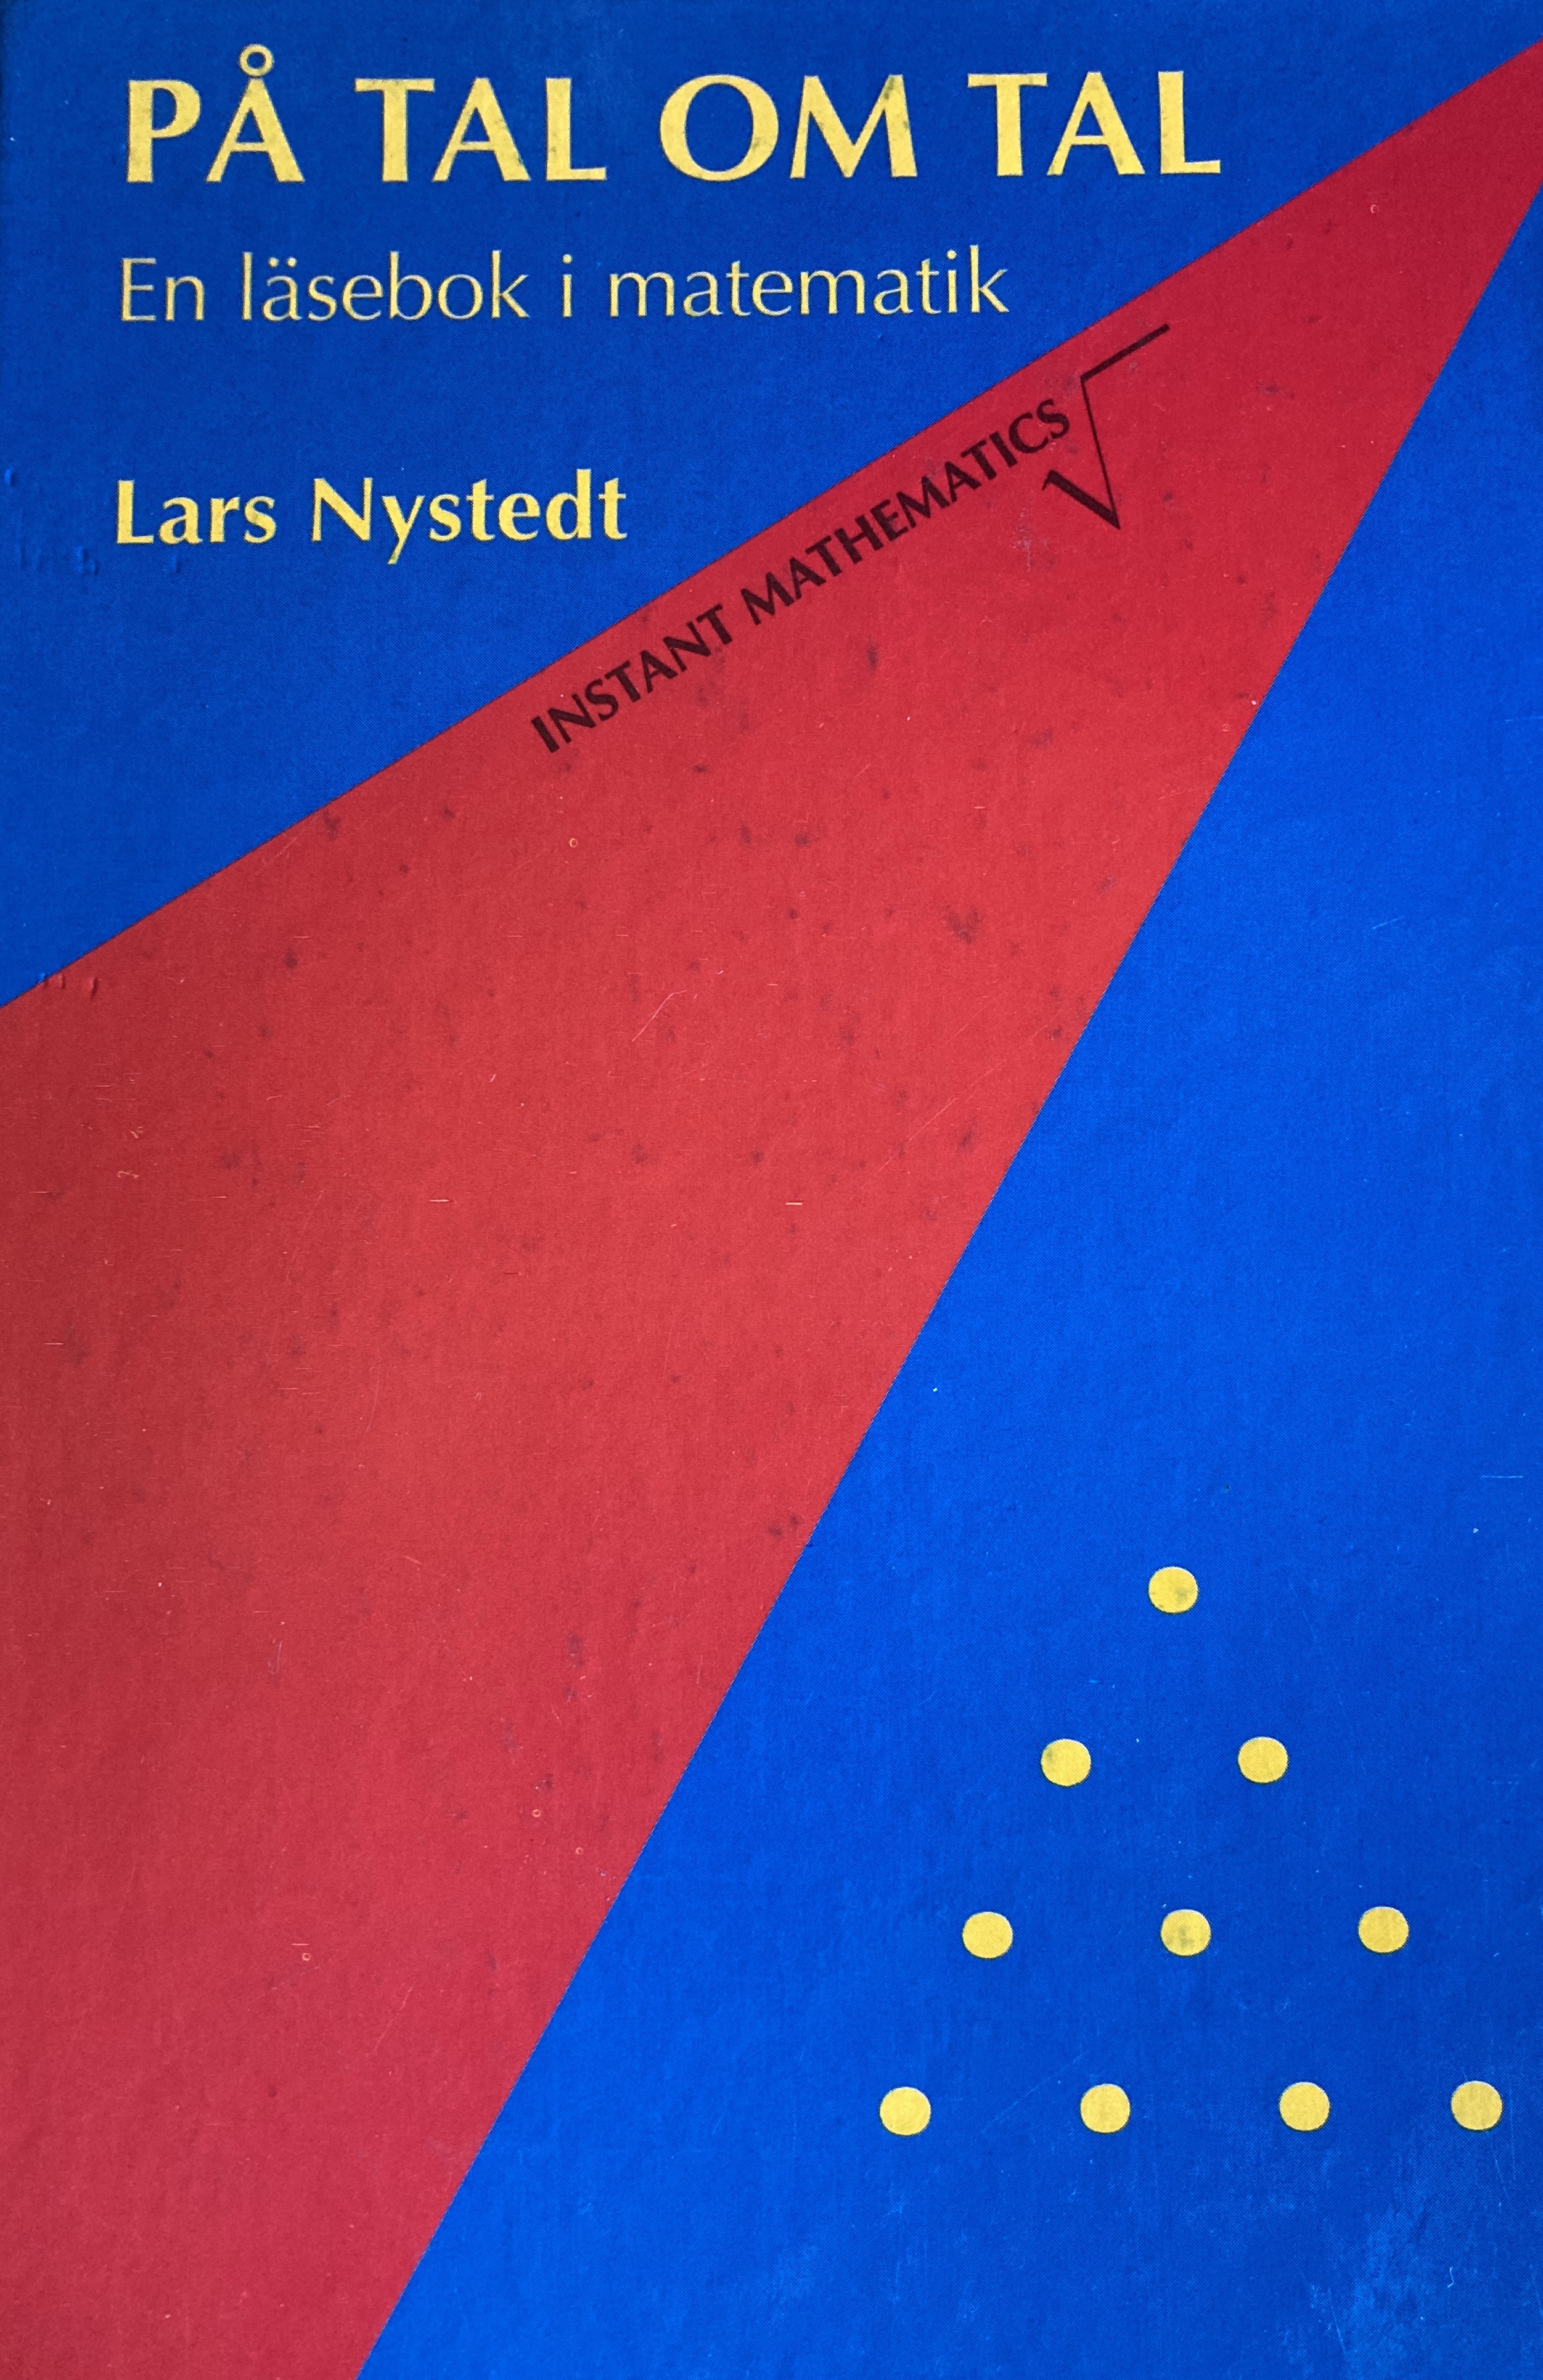 På tal om tal : en läsebok i matematik; Lars Nystedt; 2012